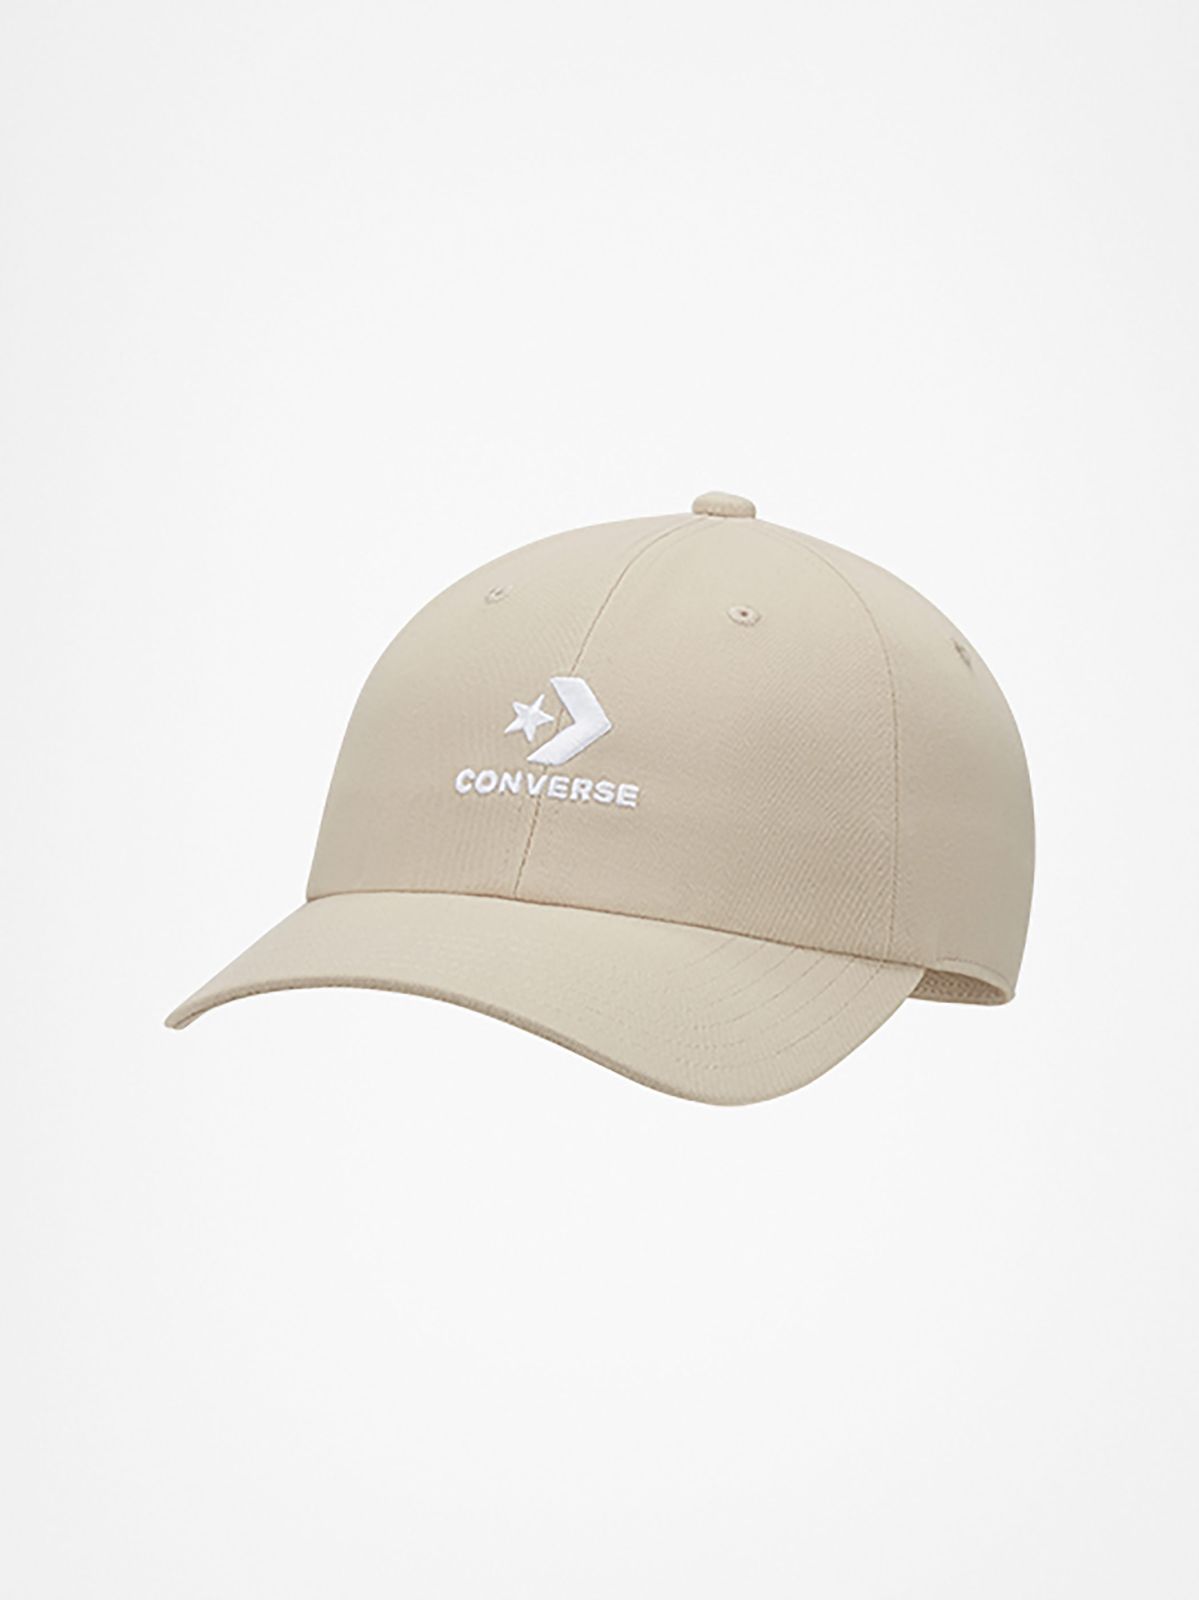  כובע מצחייה לוגו / גברים של CONVERSE